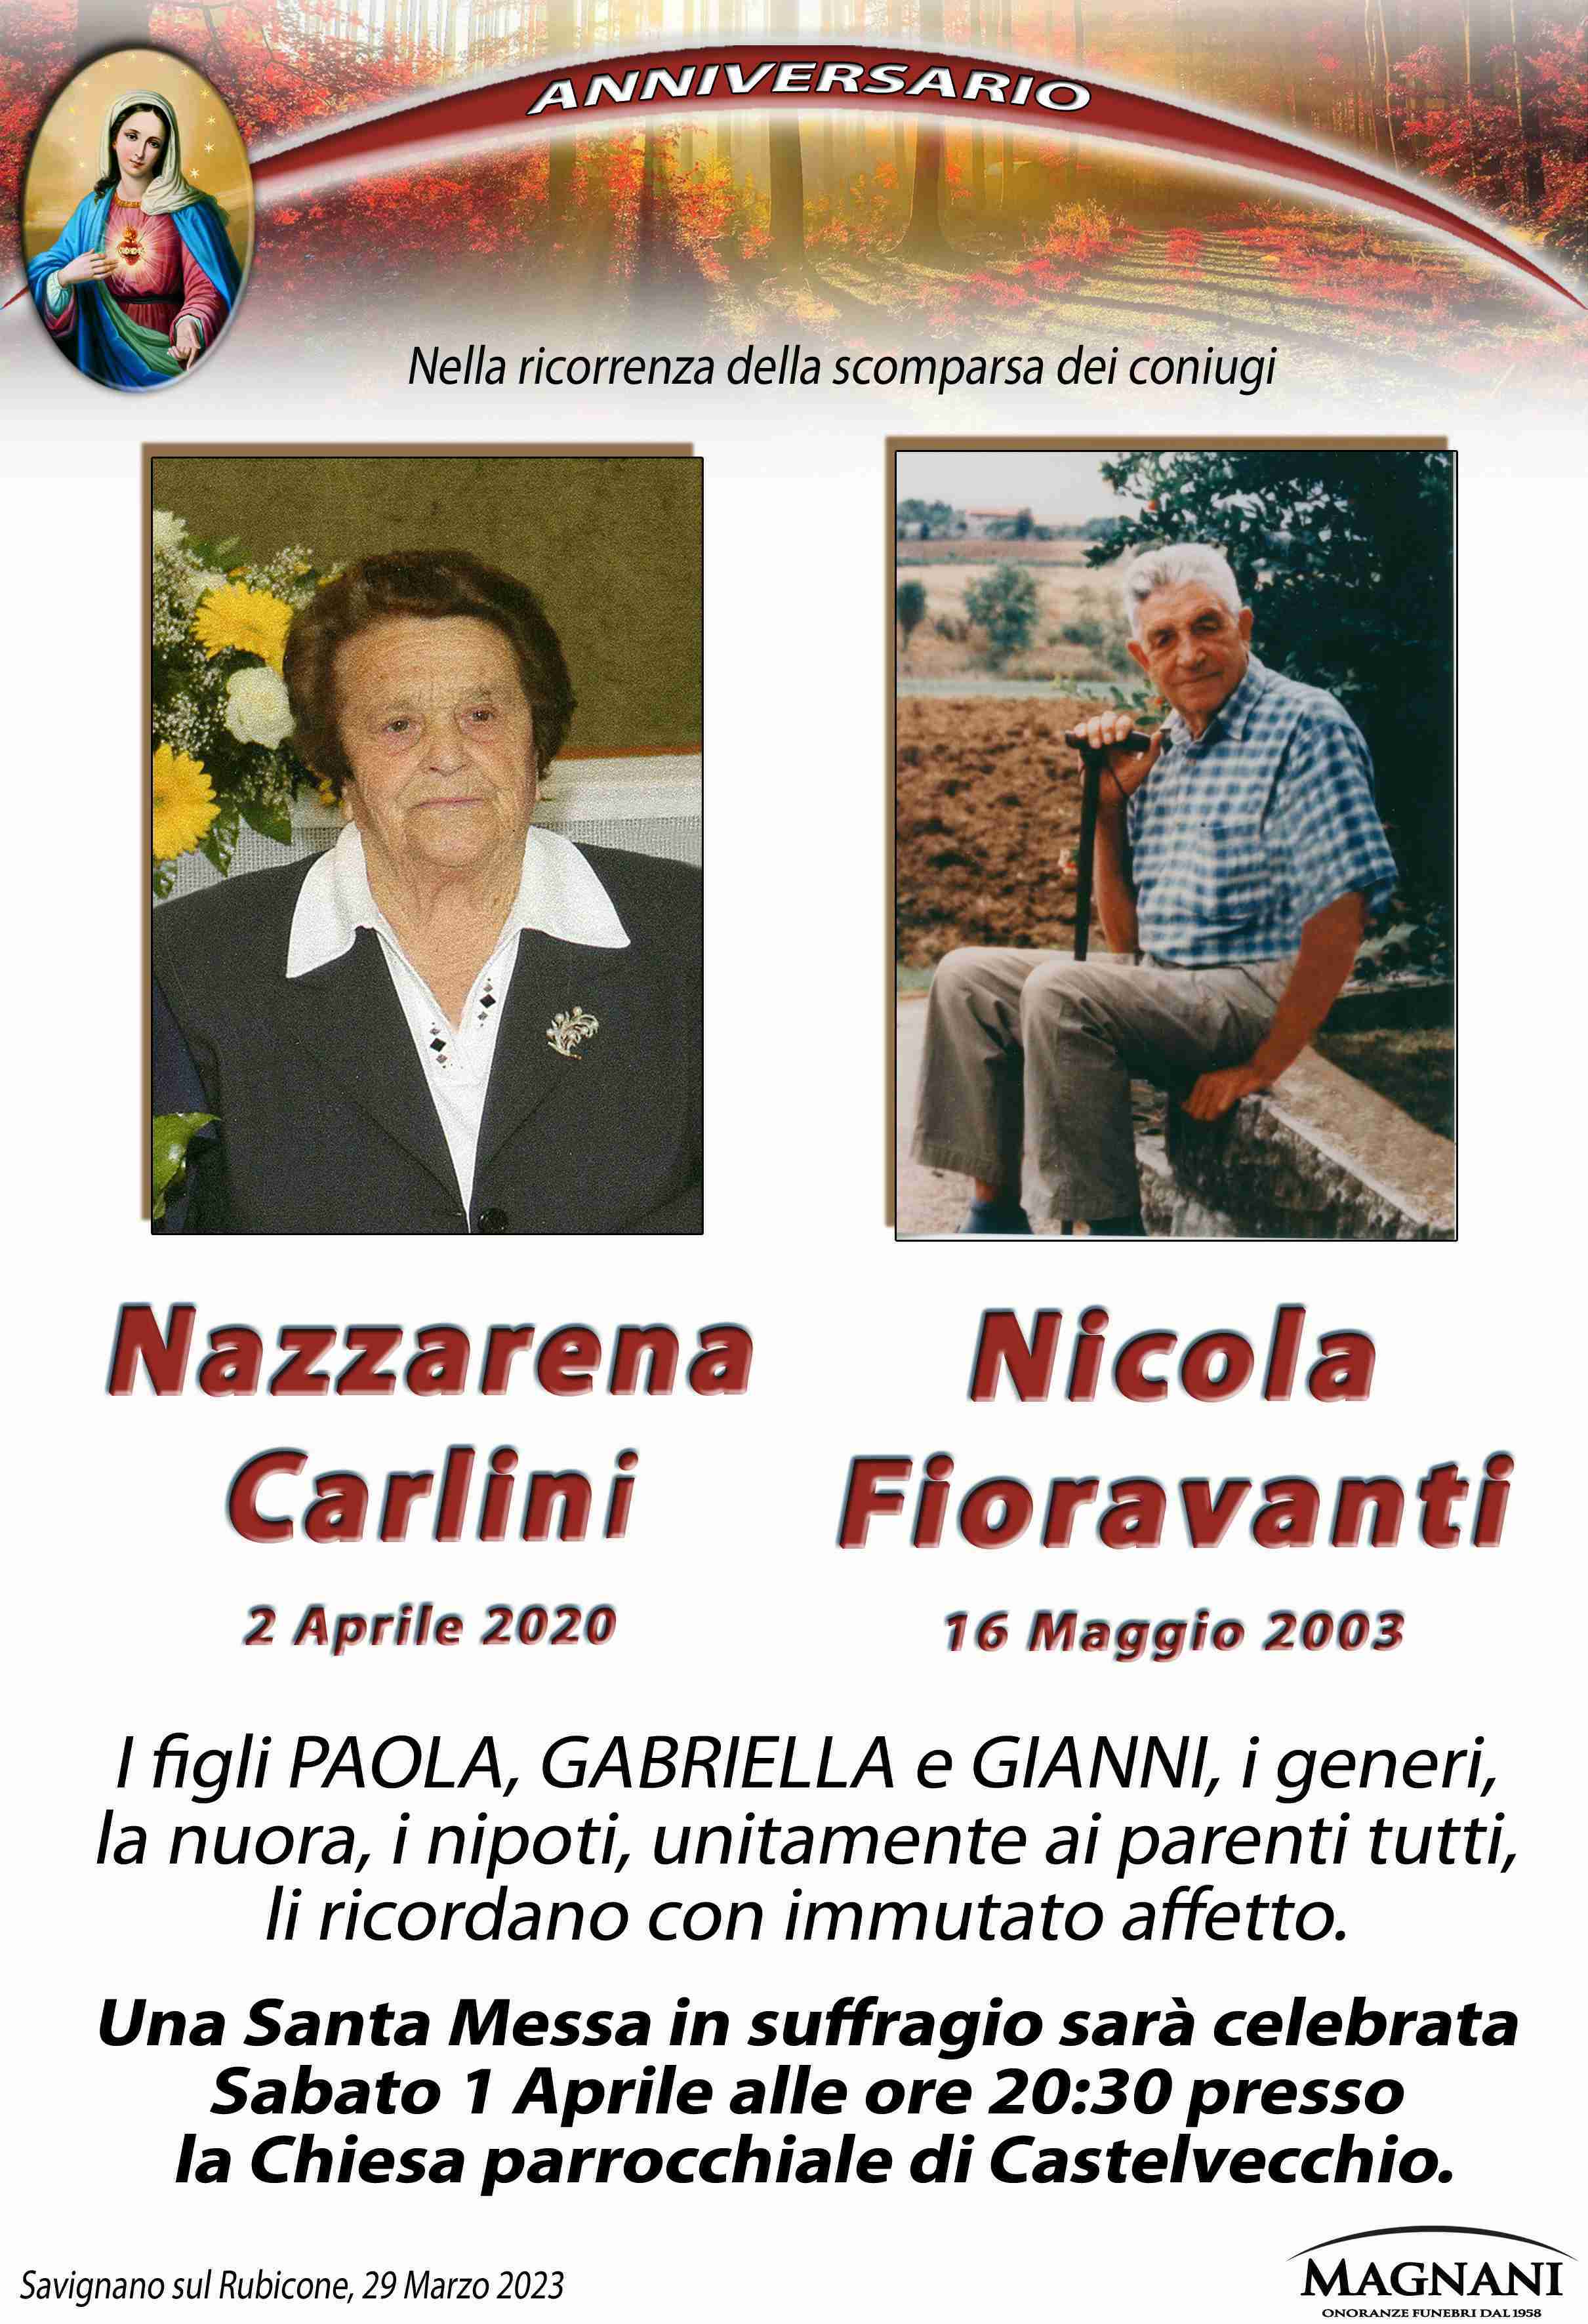 Nazzarena Carlini e Nicola Fioravanti